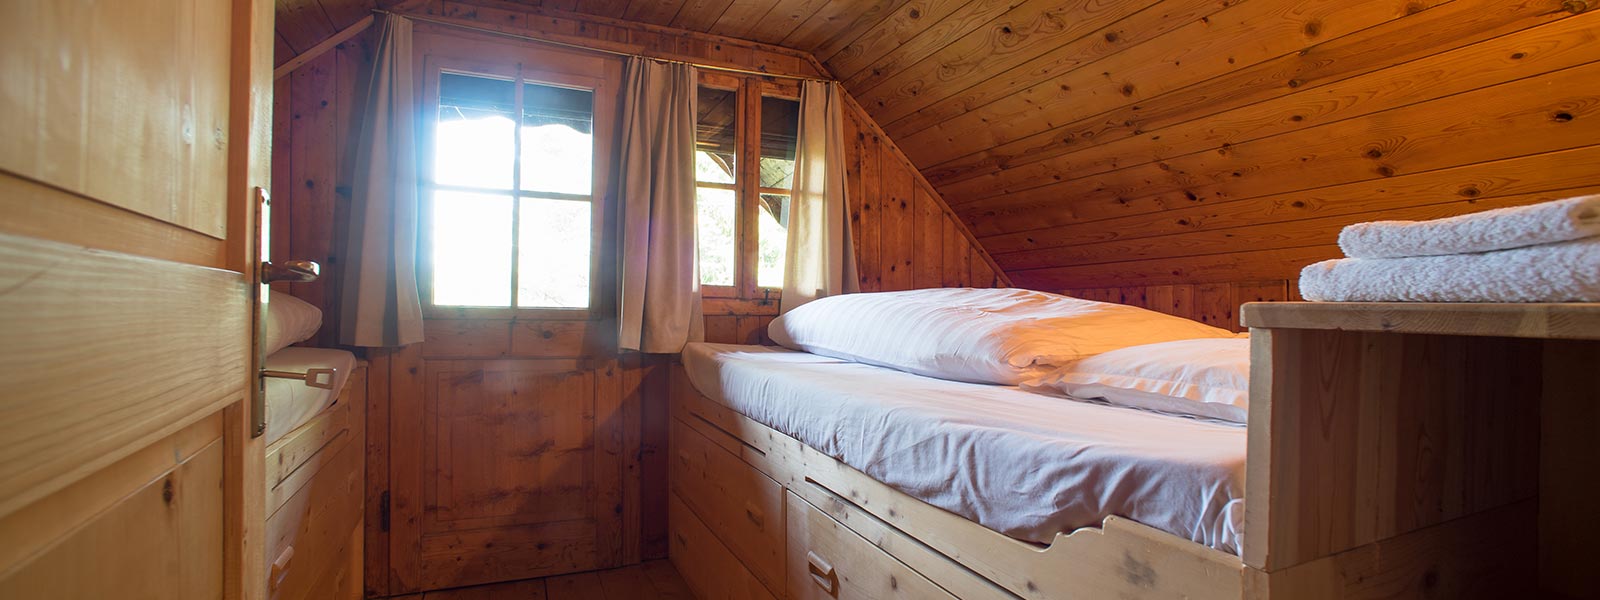 camera da letto in legno del Mutterhäusl dell'hotel Briol a Barbiano 